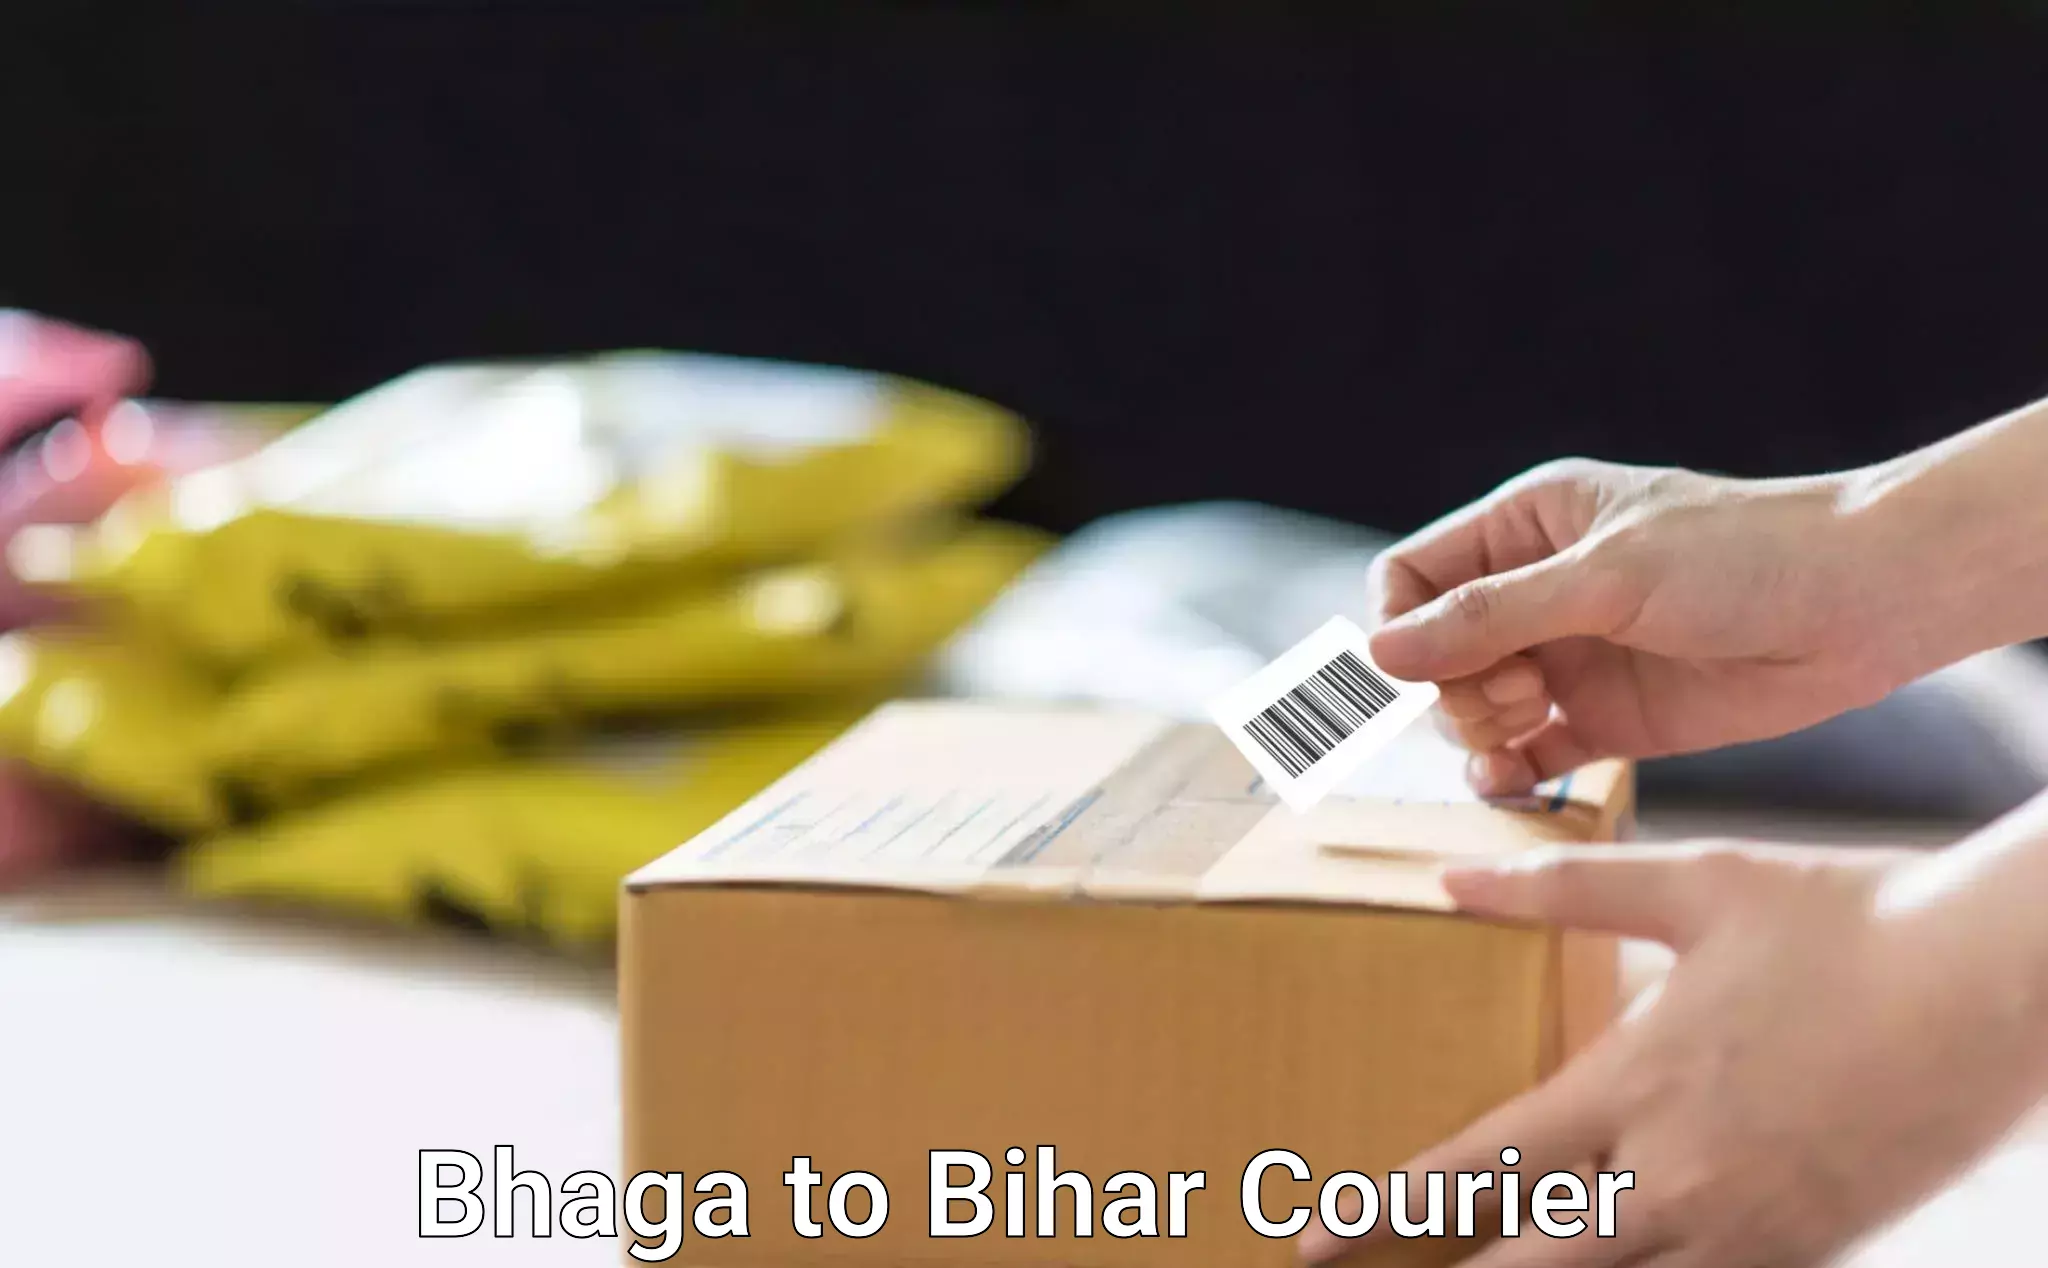 Customizable shipping options in Bhaga to Piro